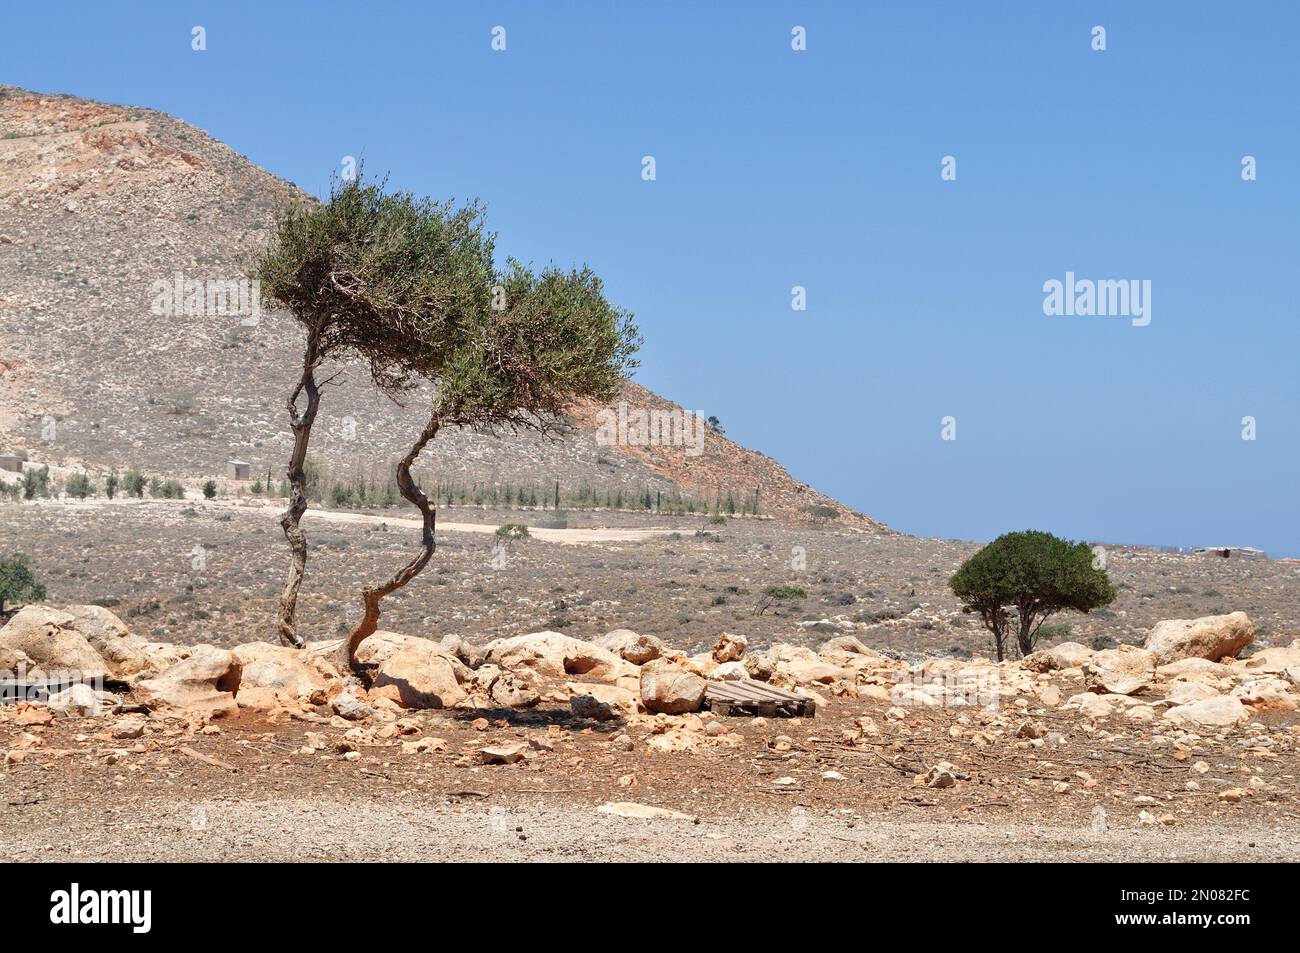 Paesaggio roccioso sulla costa dell'isola di Creta. Foto Stock